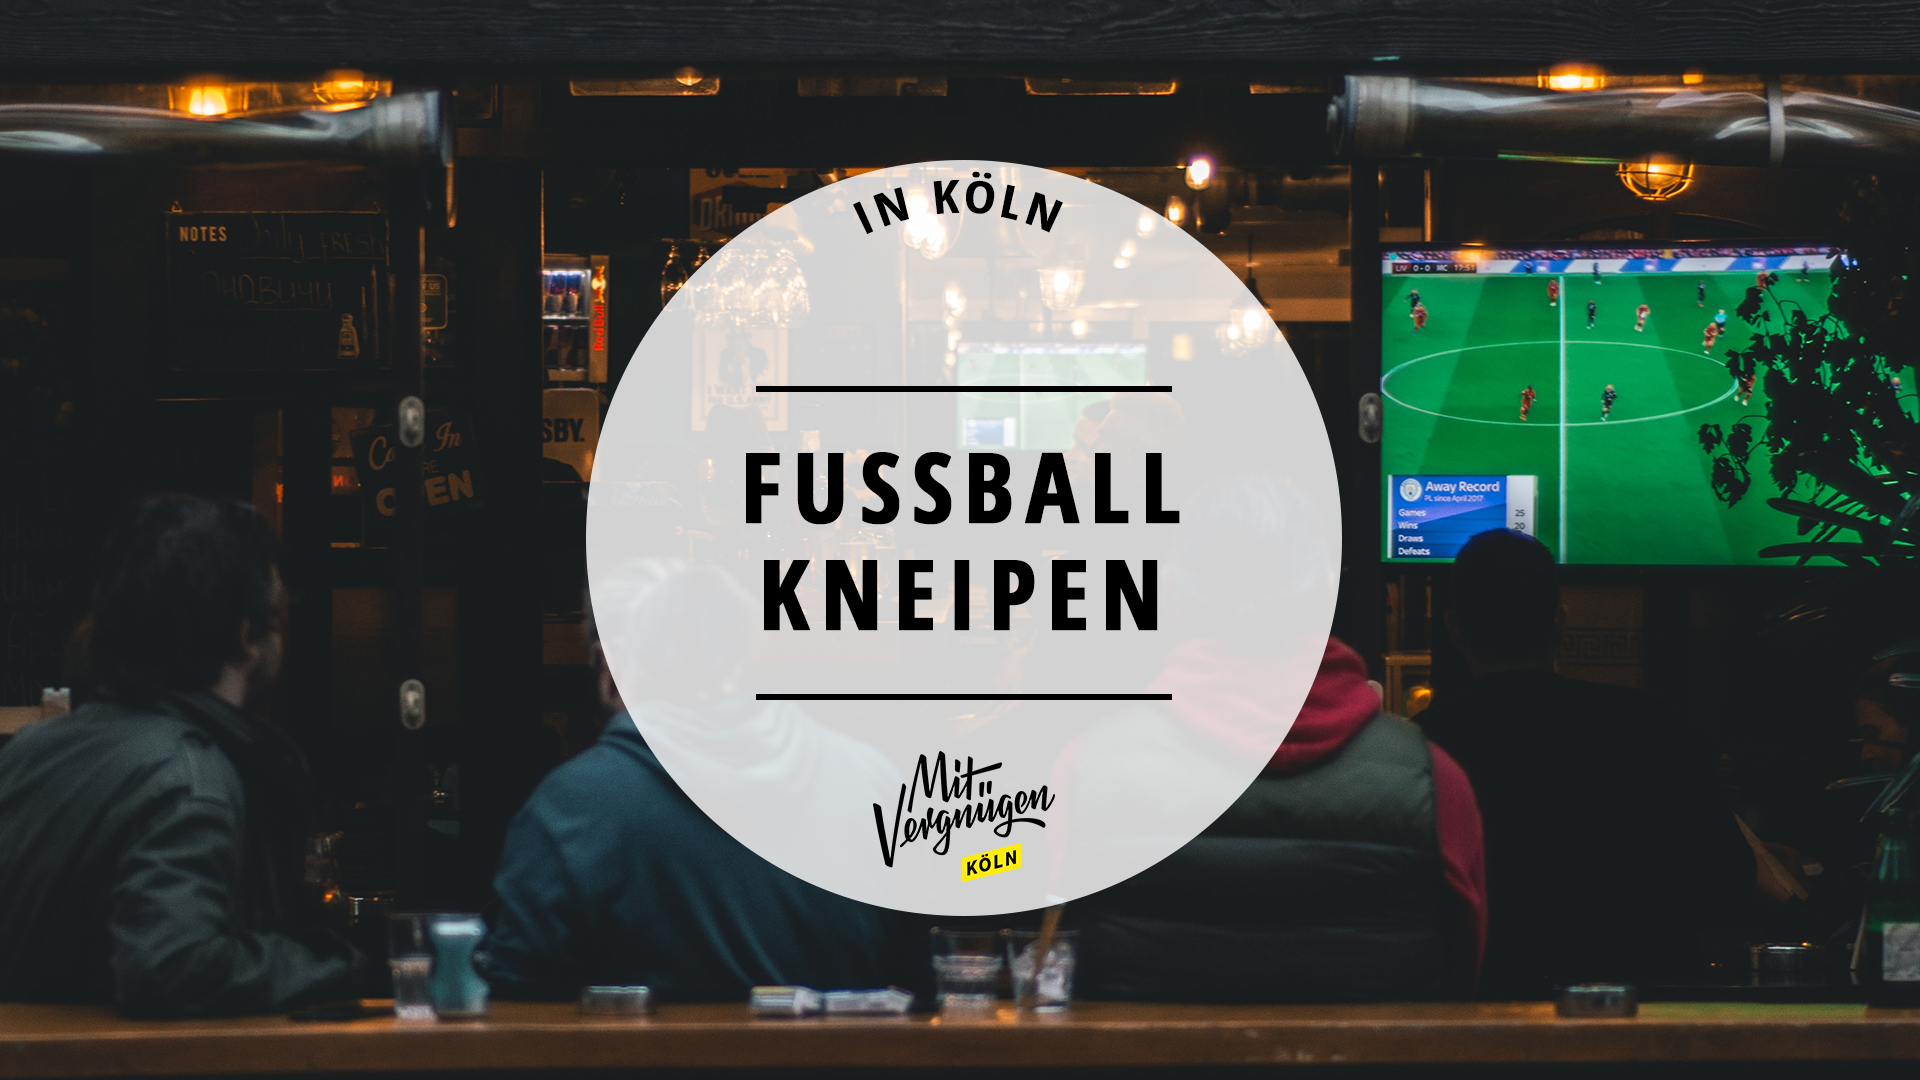 11 Kneipen in Köln, in denen ihr Fußball gucken könnt Mit Vergnügen Köln